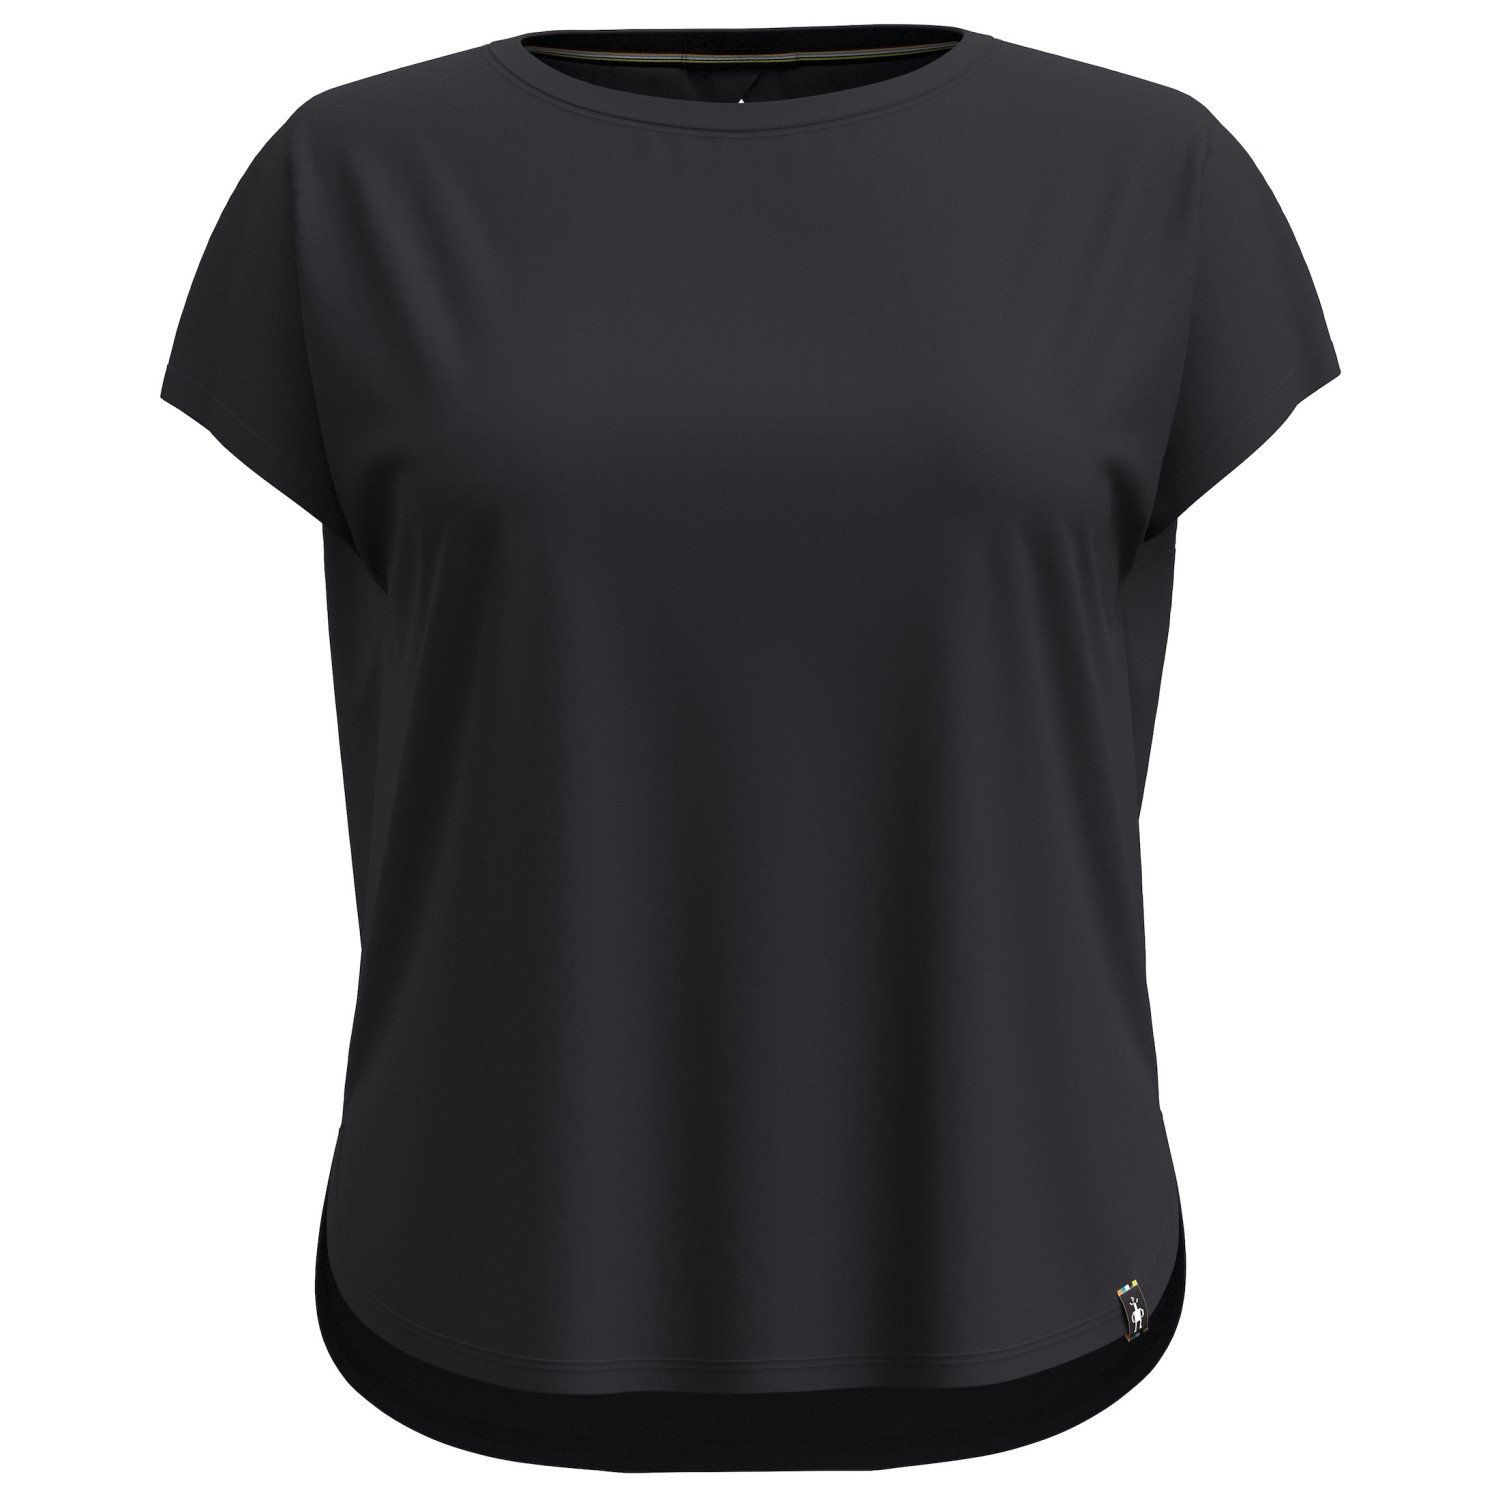 Рубашка из мериноса Smartwool Women's Swing Top, черный